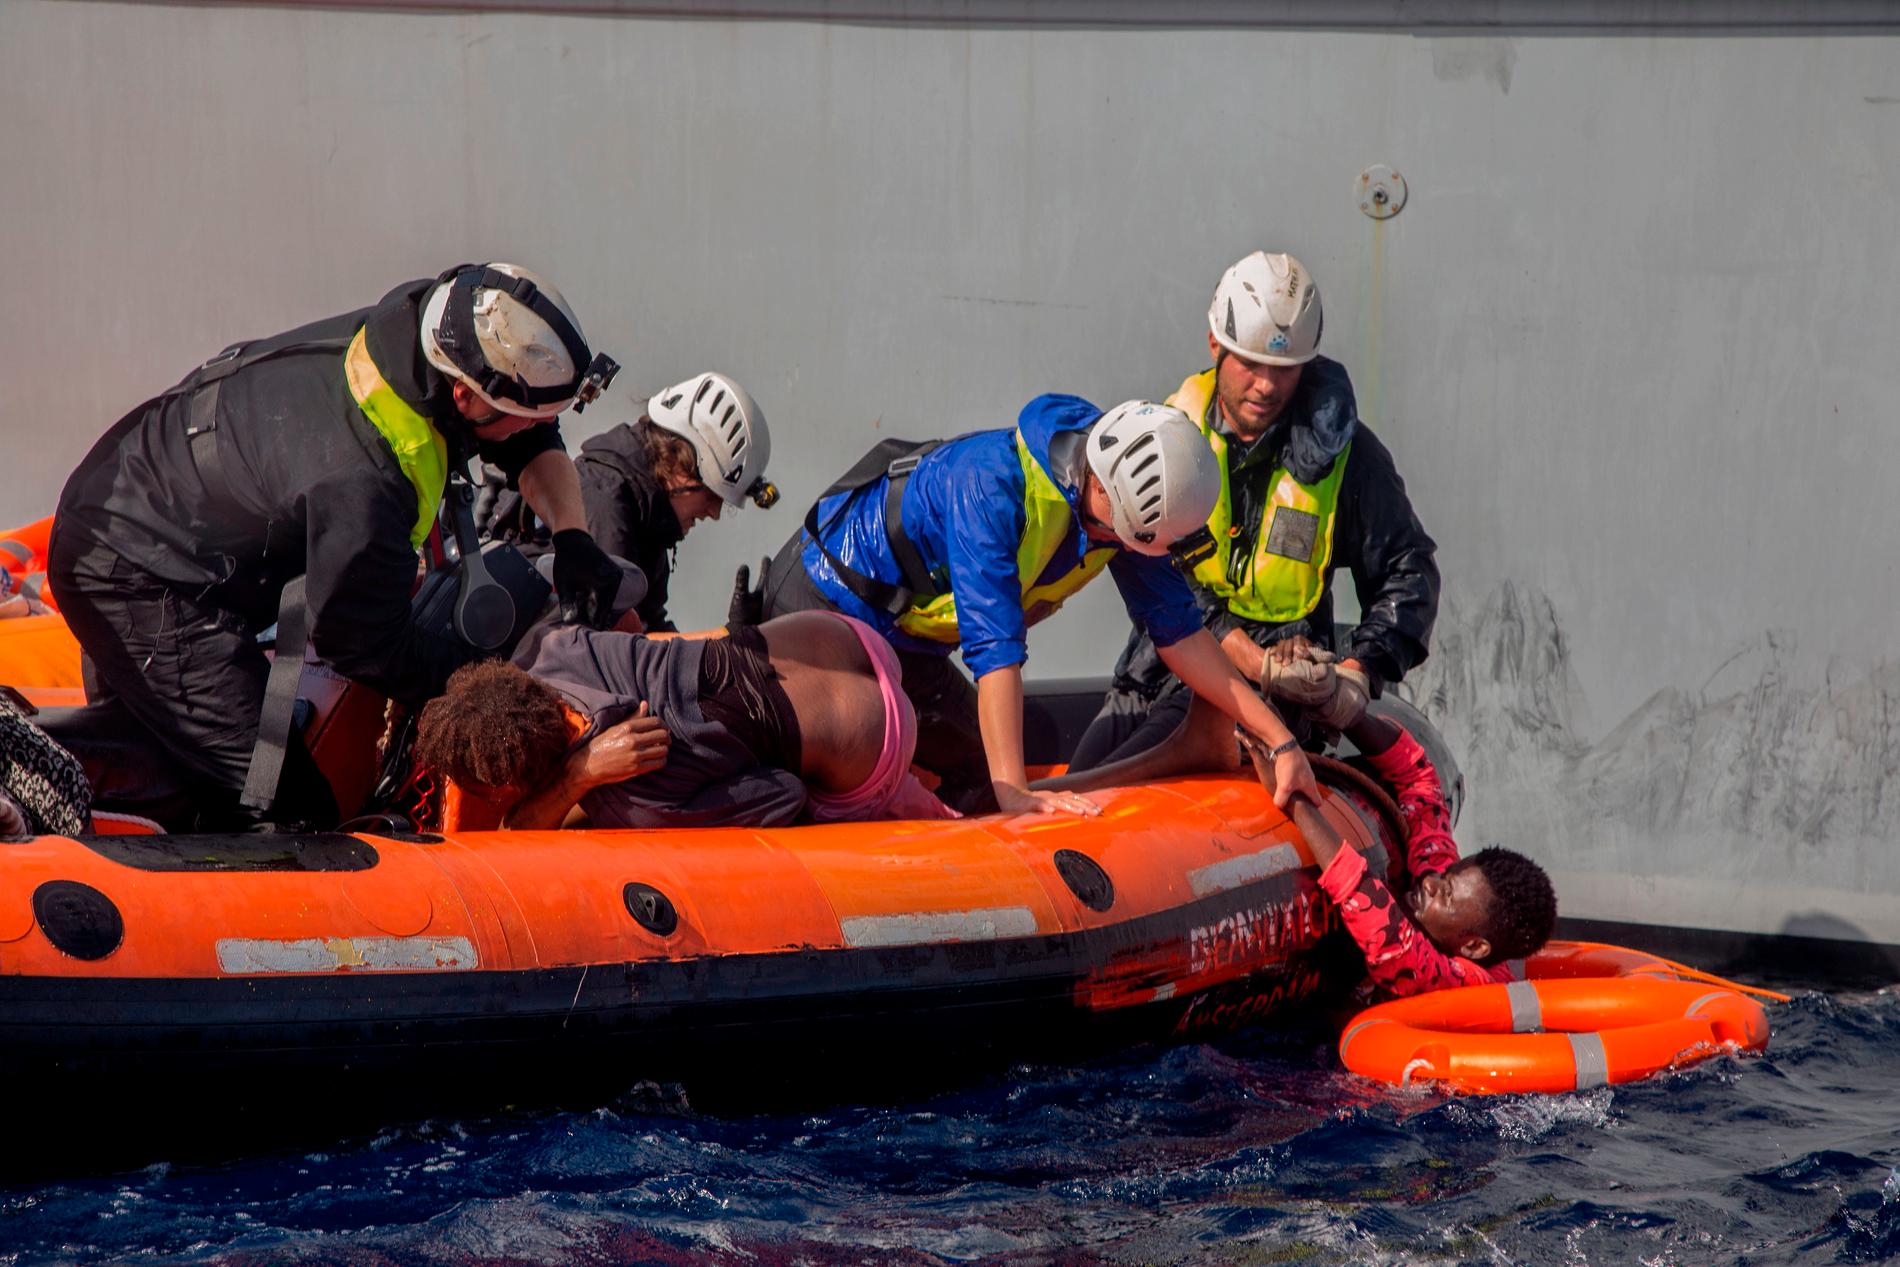 ”Jag hörde de desperata skriken överallt” berättar fotografen Alessio Paduano, som befann sig på en av räddningsbåtarna och fotograferade när de nödställda människorna räddades.